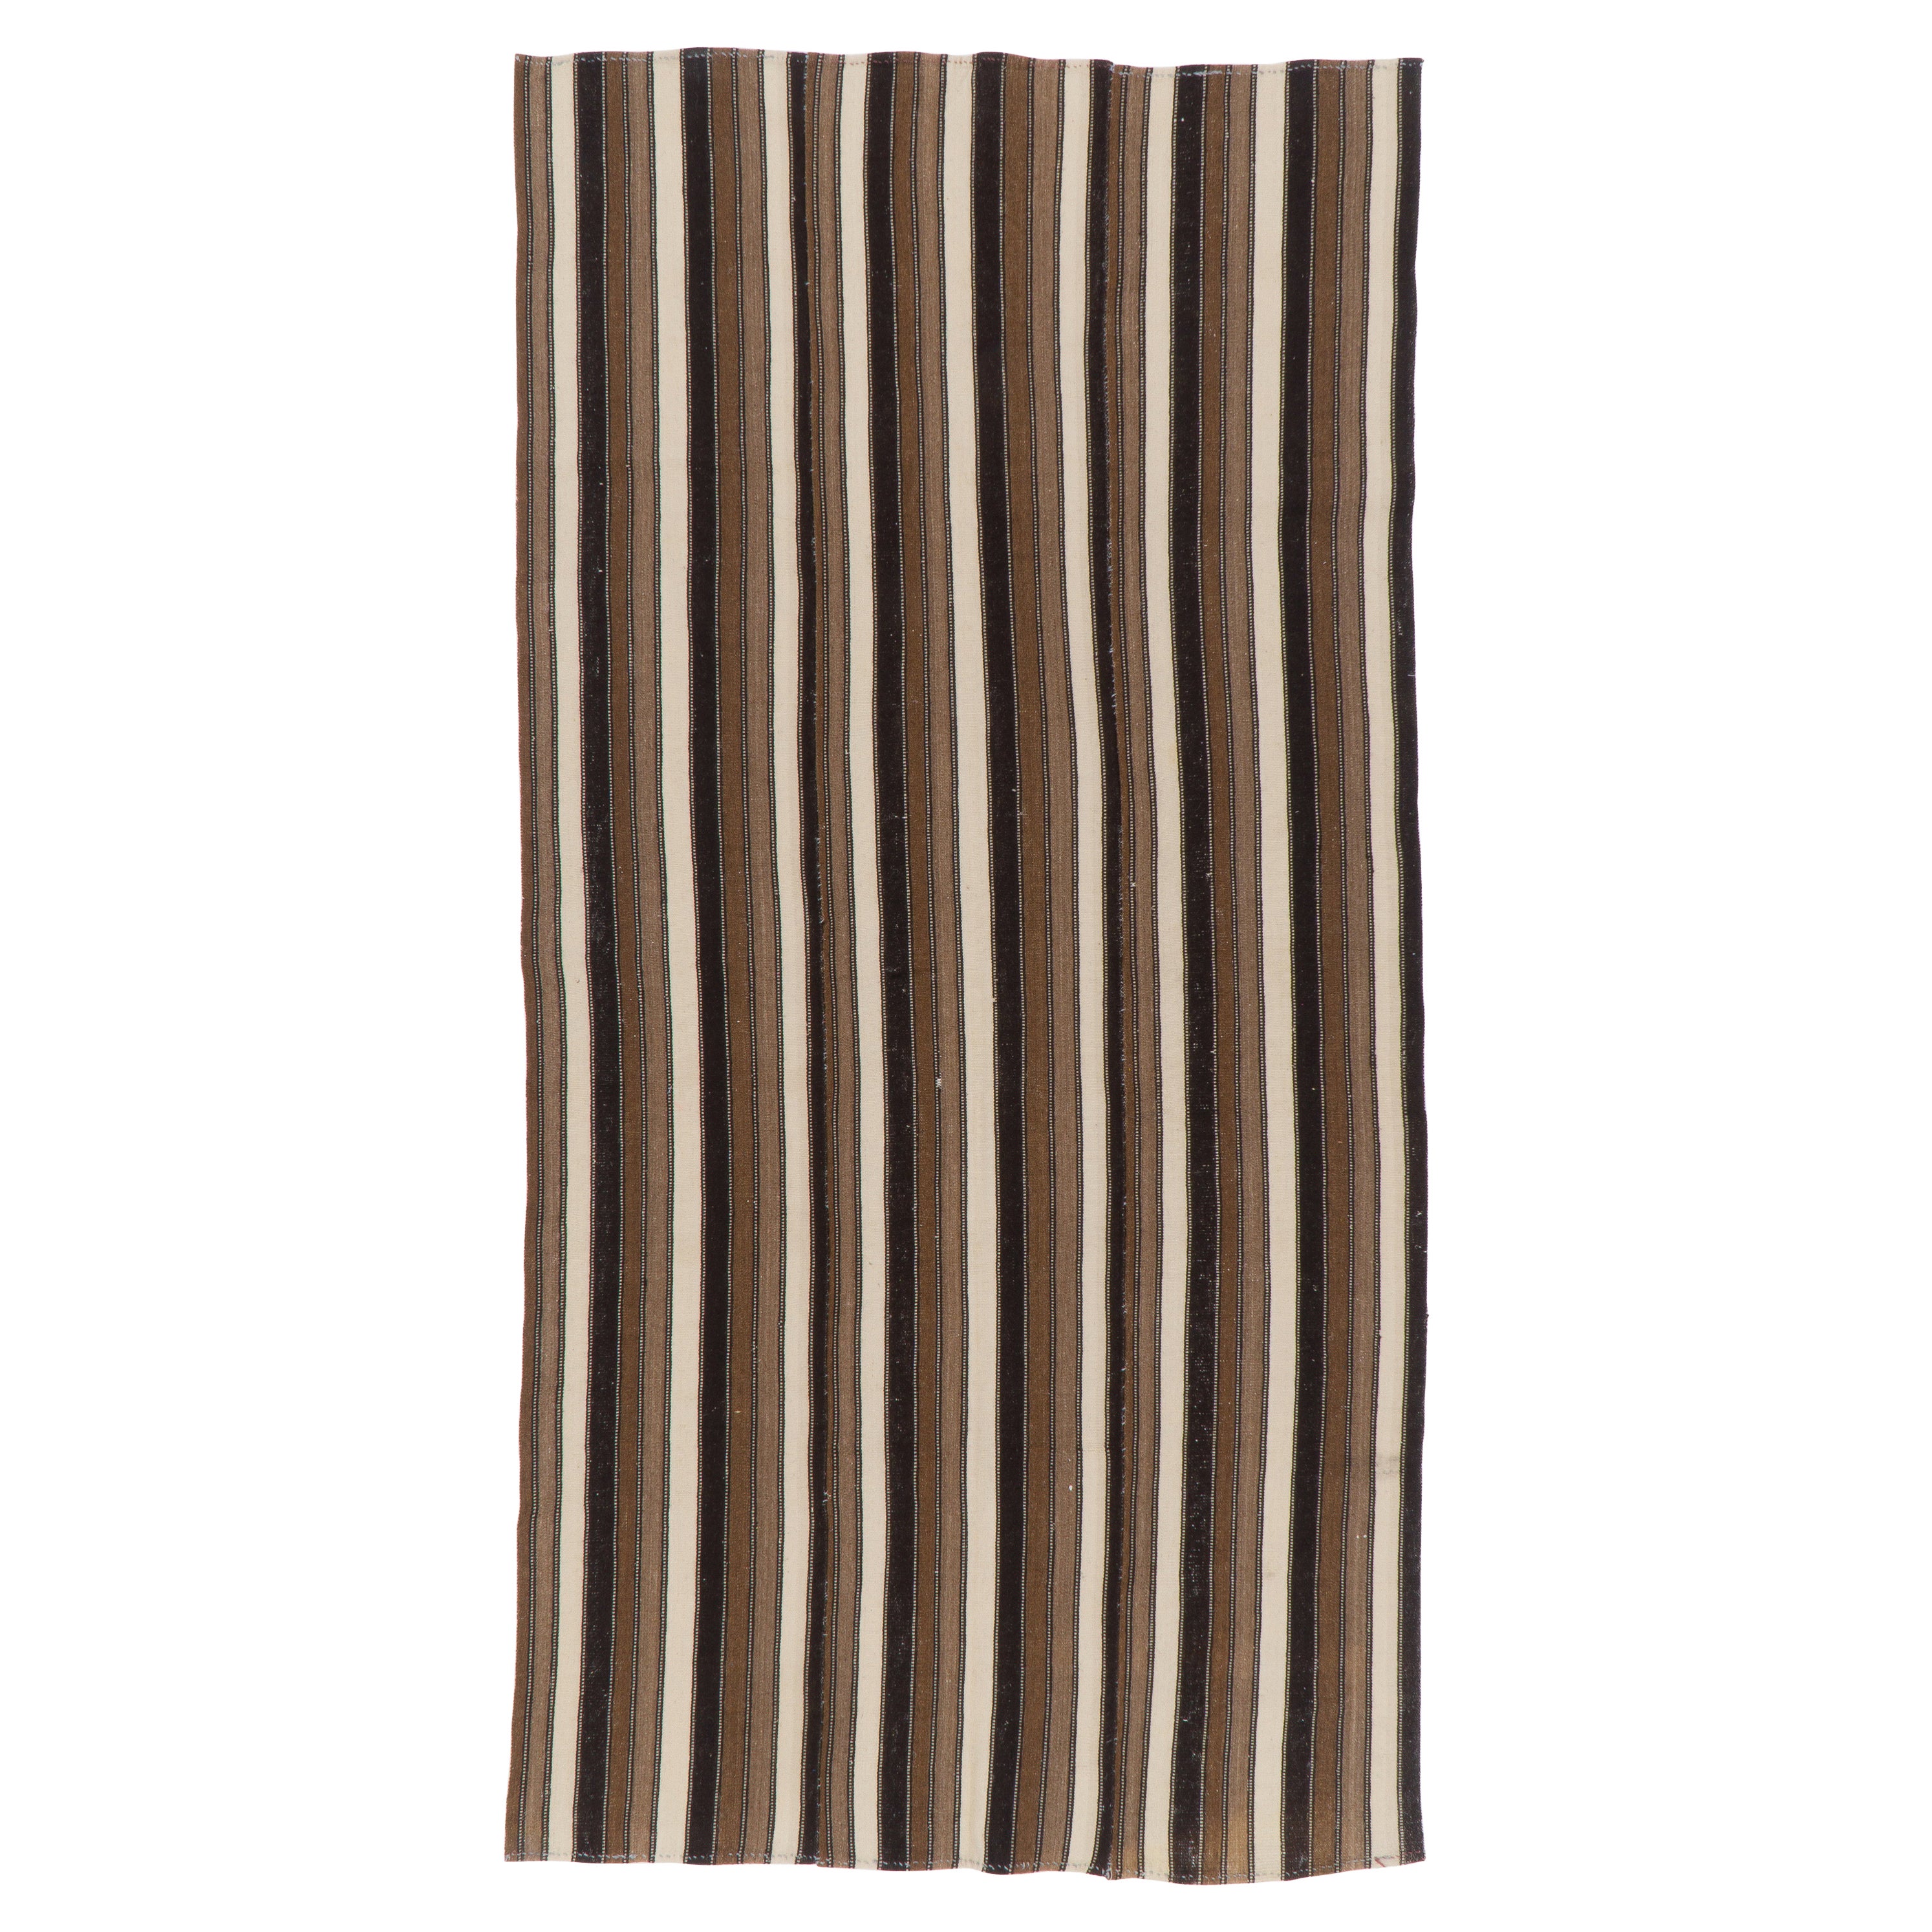 5x9.2 Ft Vintage Striped Turkish Kilim Rug, 100% Wool, Reversible, Brown & Beige